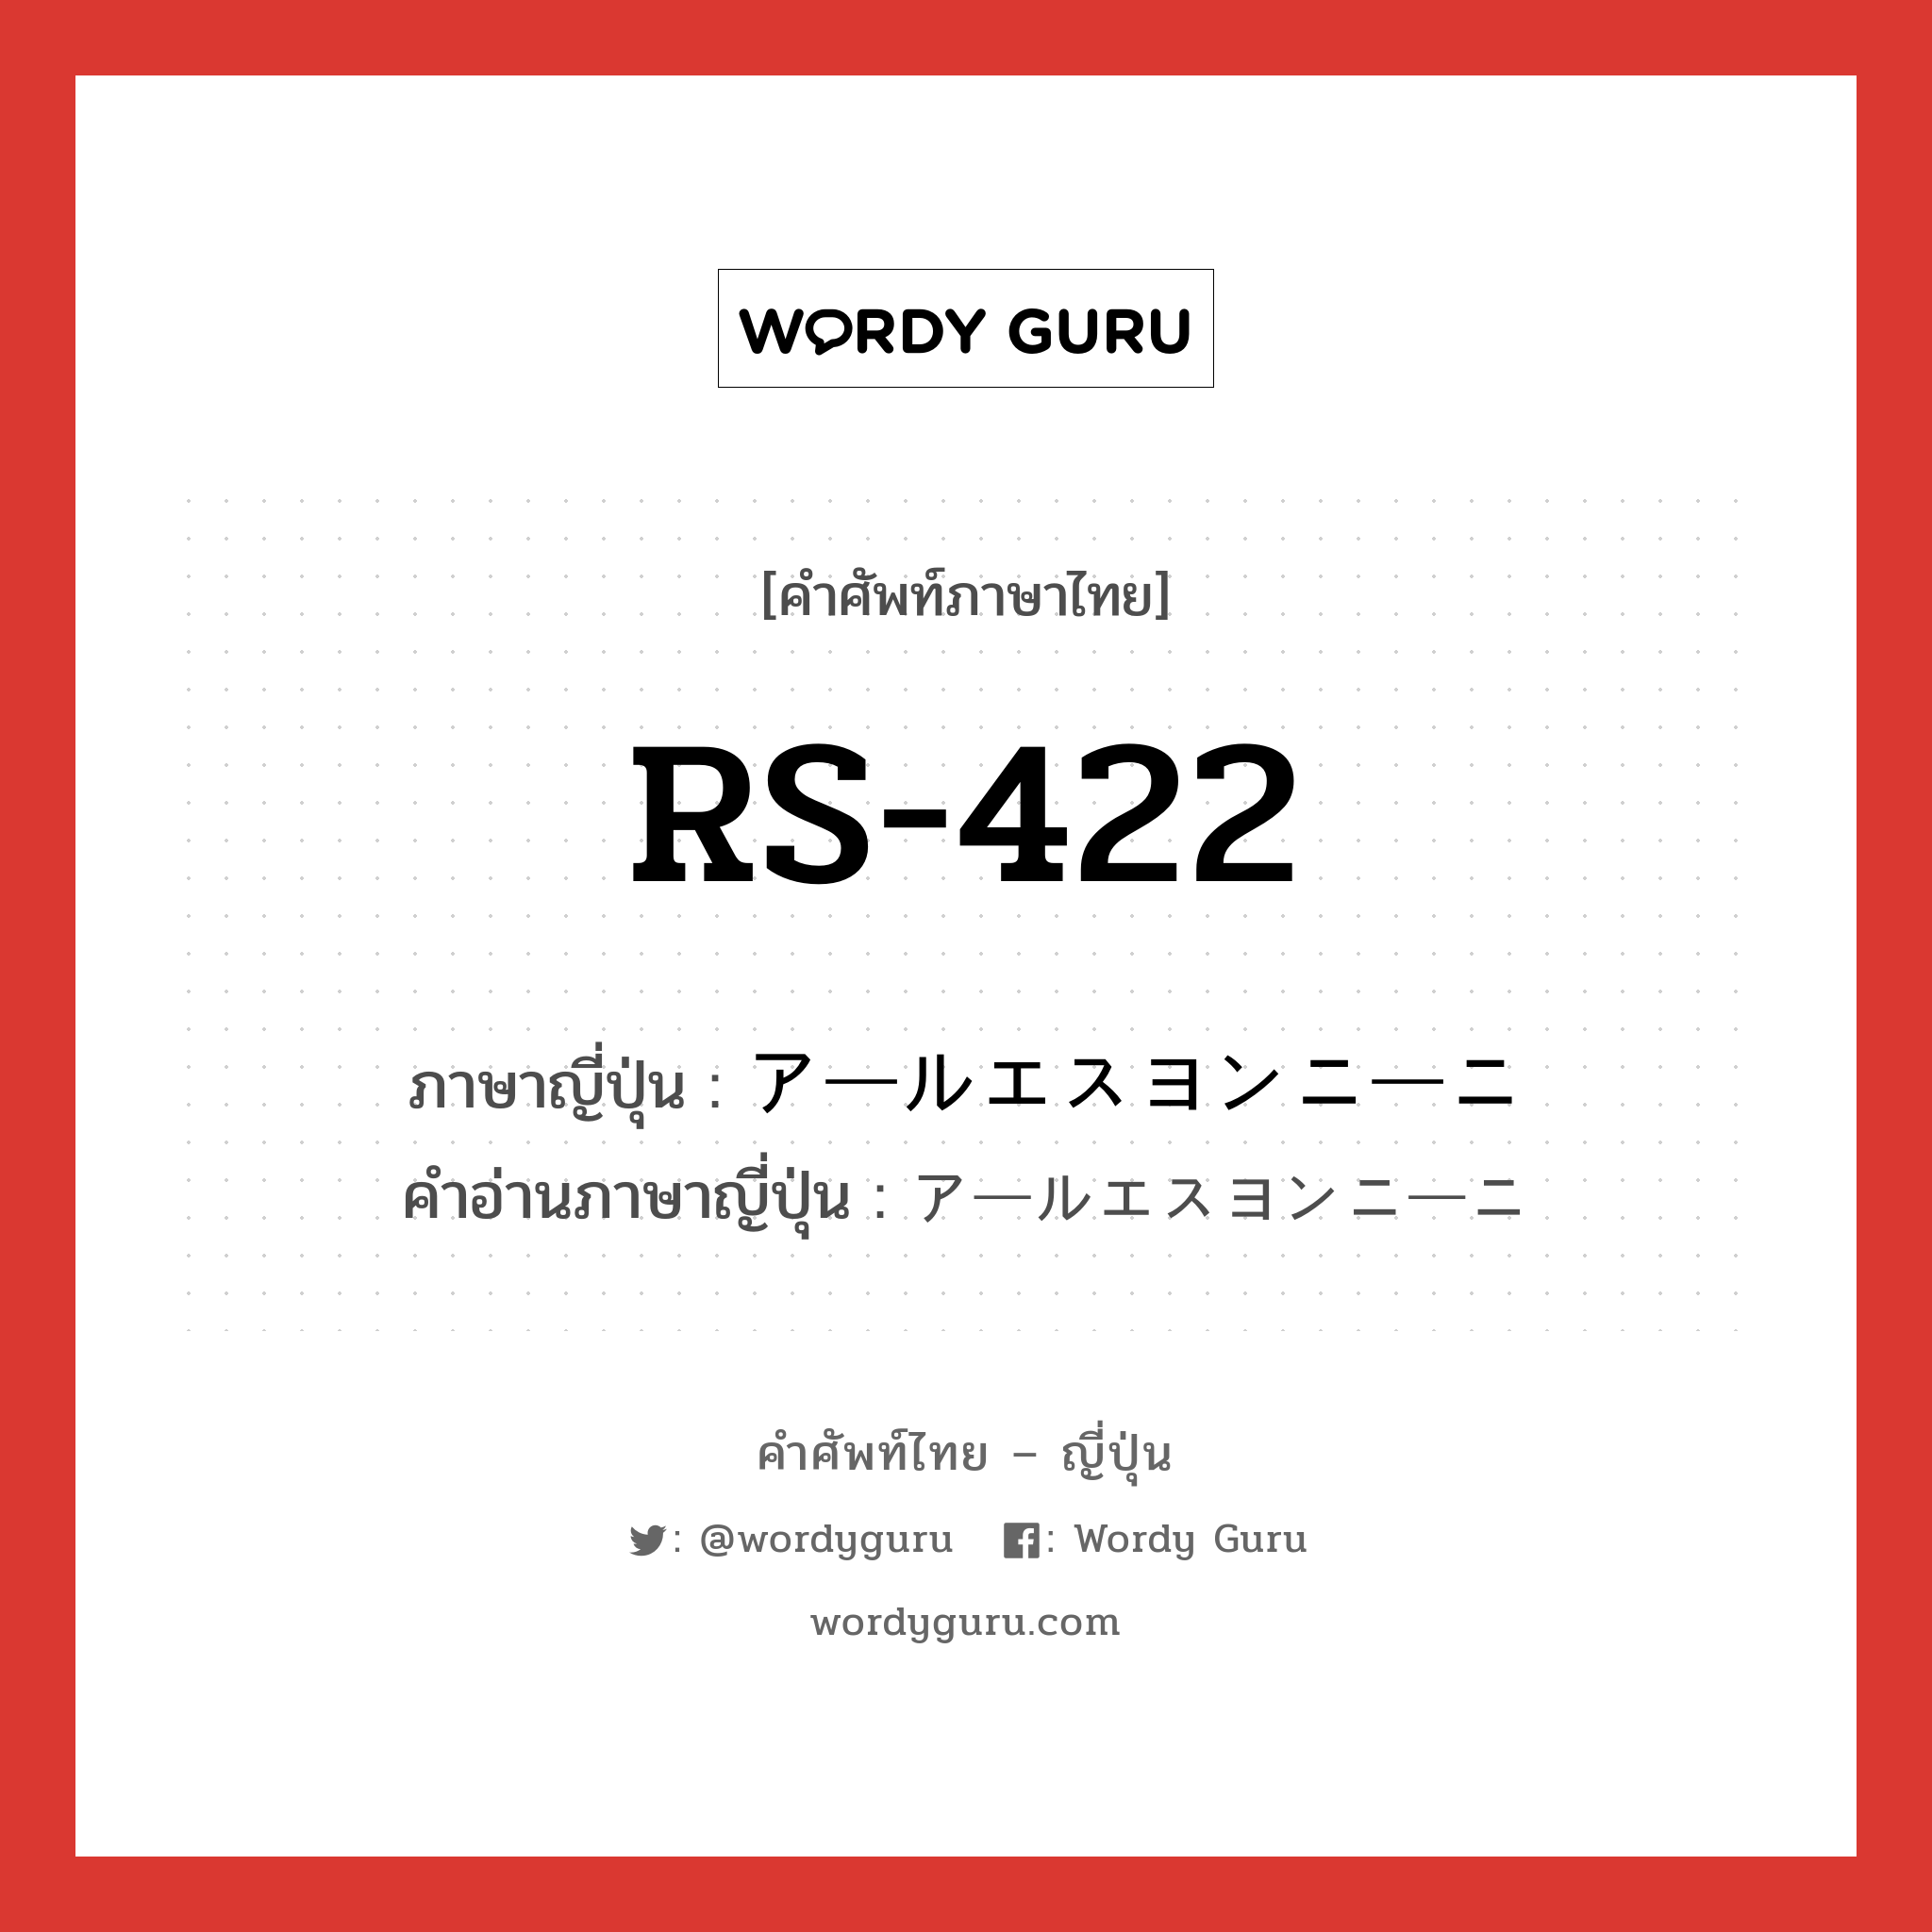 RS-422 ภาษาญี่ปุ่นคืออะไร, คำศัพท์ภาษาไทย - ญี่ปุ่น RS-422 ภาษาญี่ปุ่น アールエスヨンニーニ คำอ่านภาษาญี่ปุ่น アールエスヨンニーニ หมวด n หมวด n